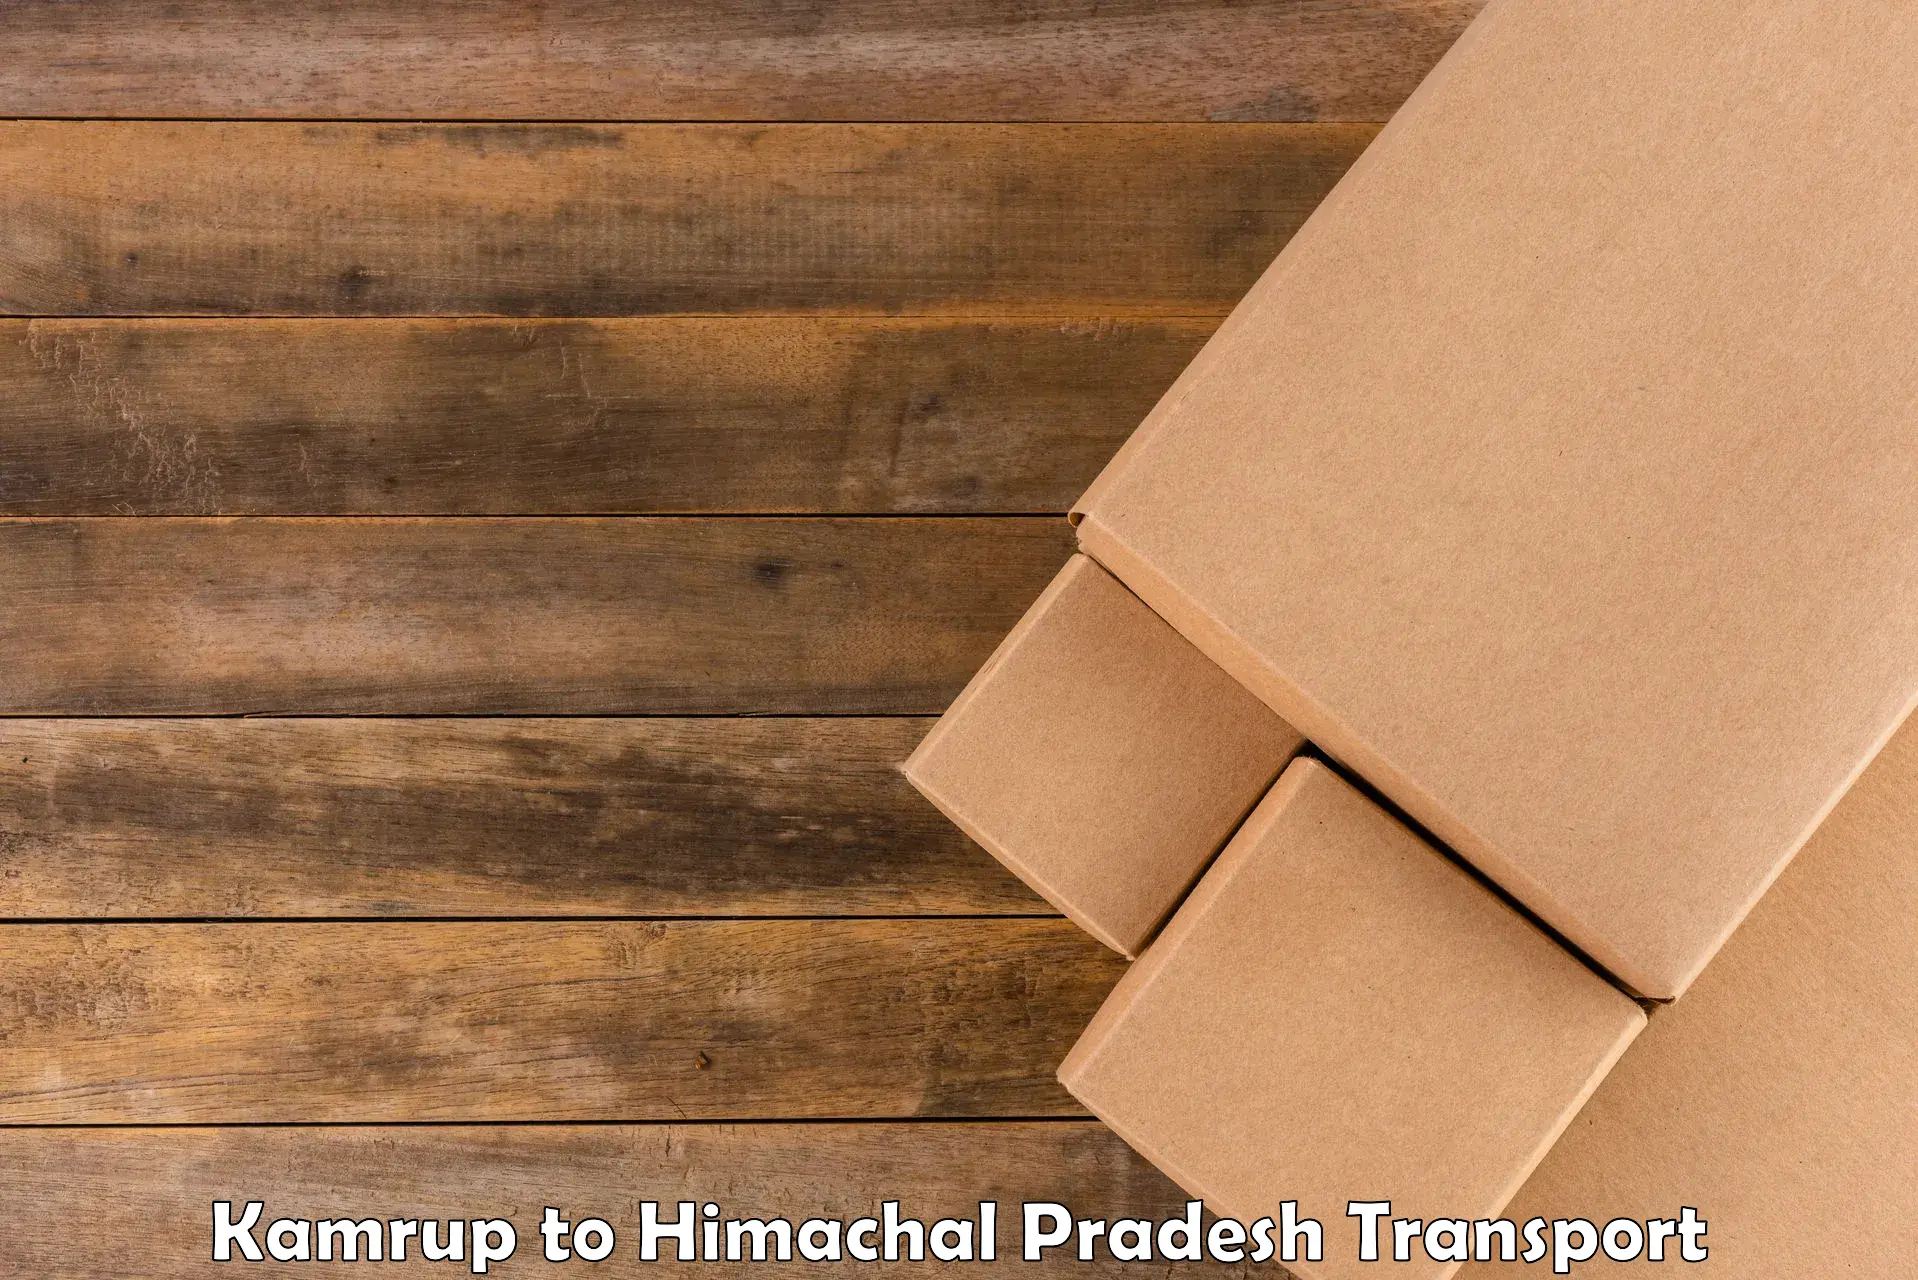 Parcel transport services Kamrup to Dharamshala